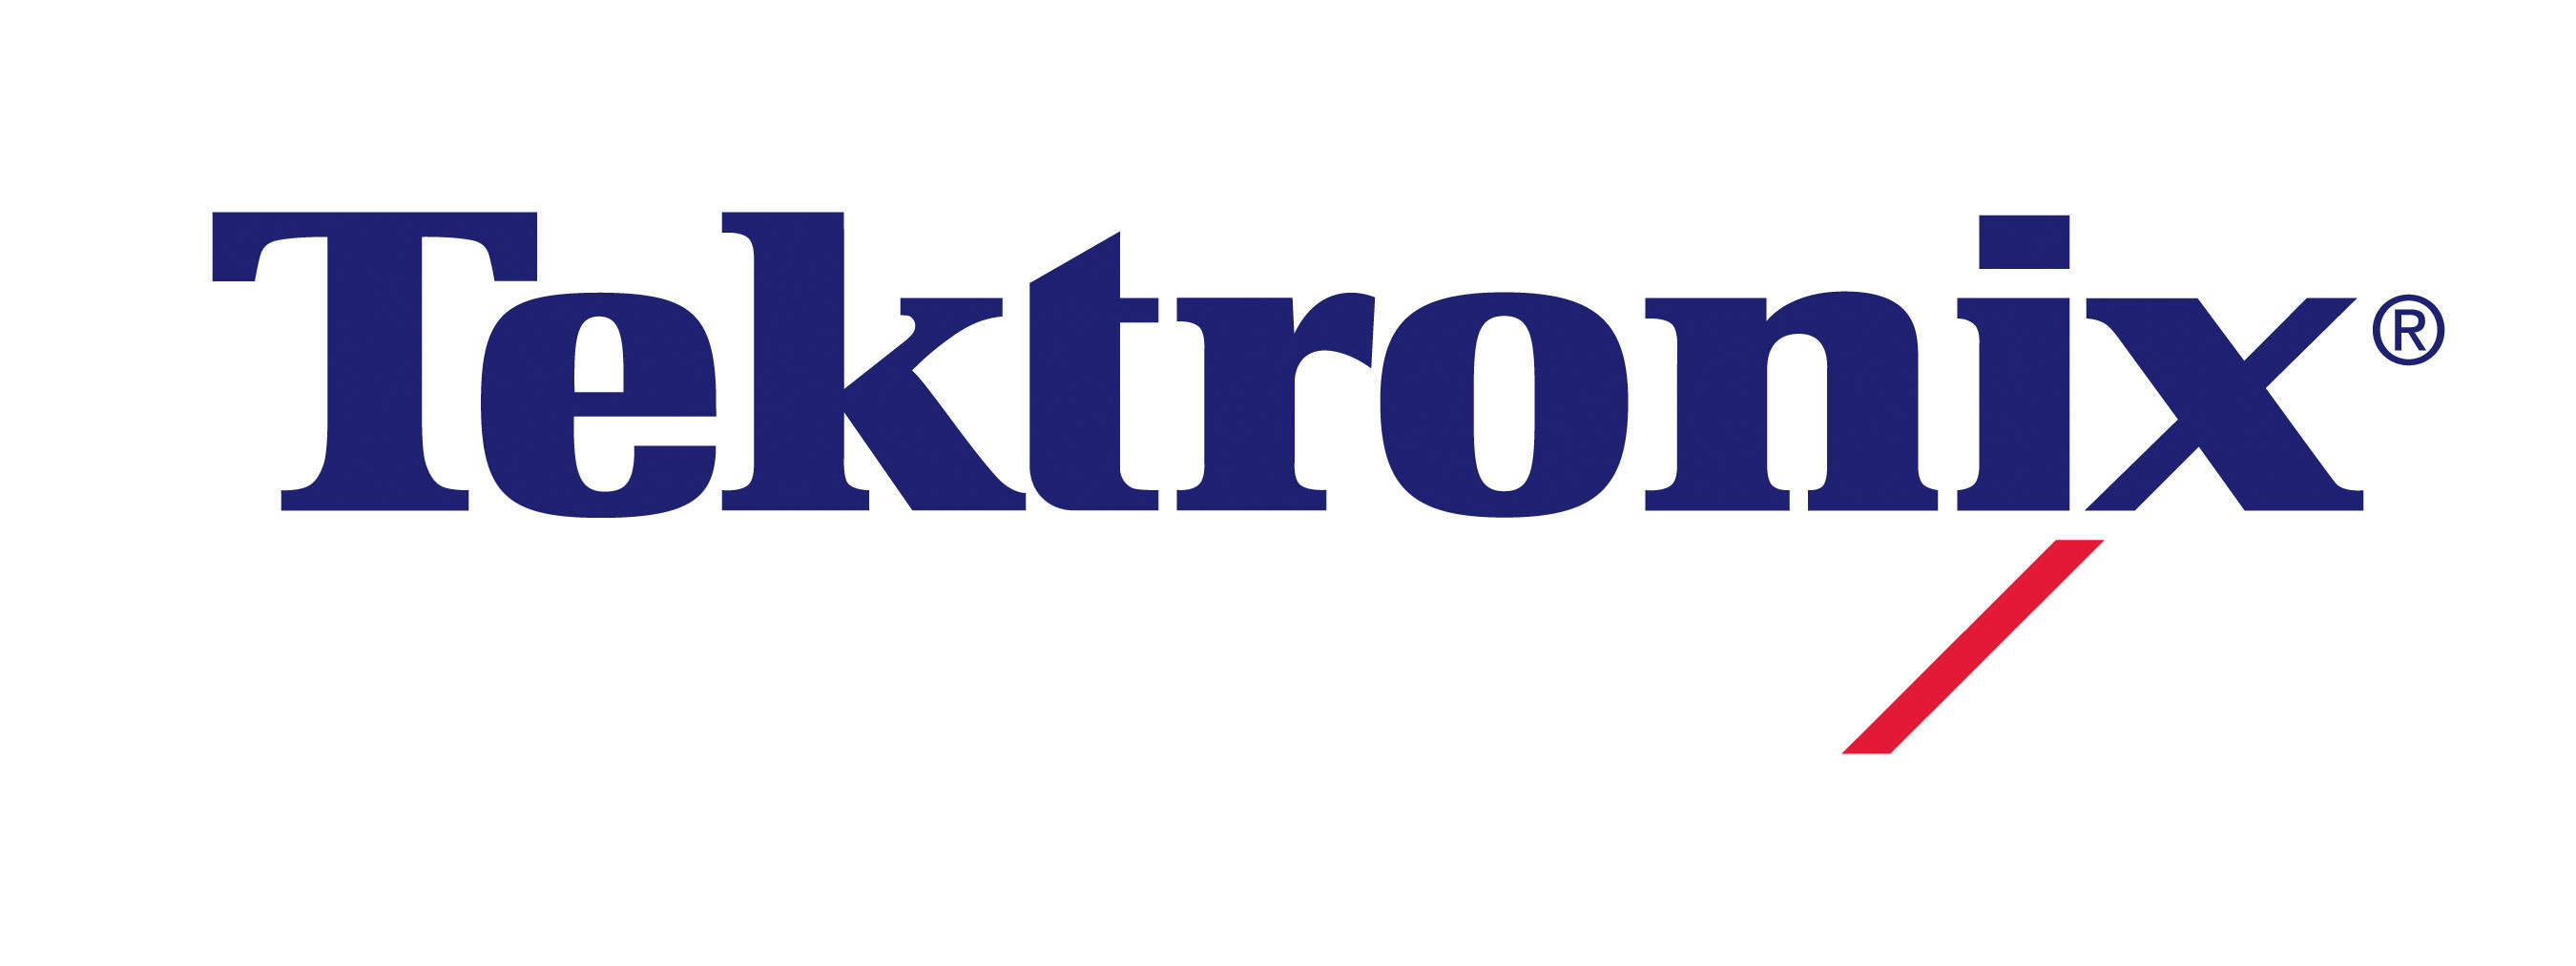 Tektronix, Inc. logo